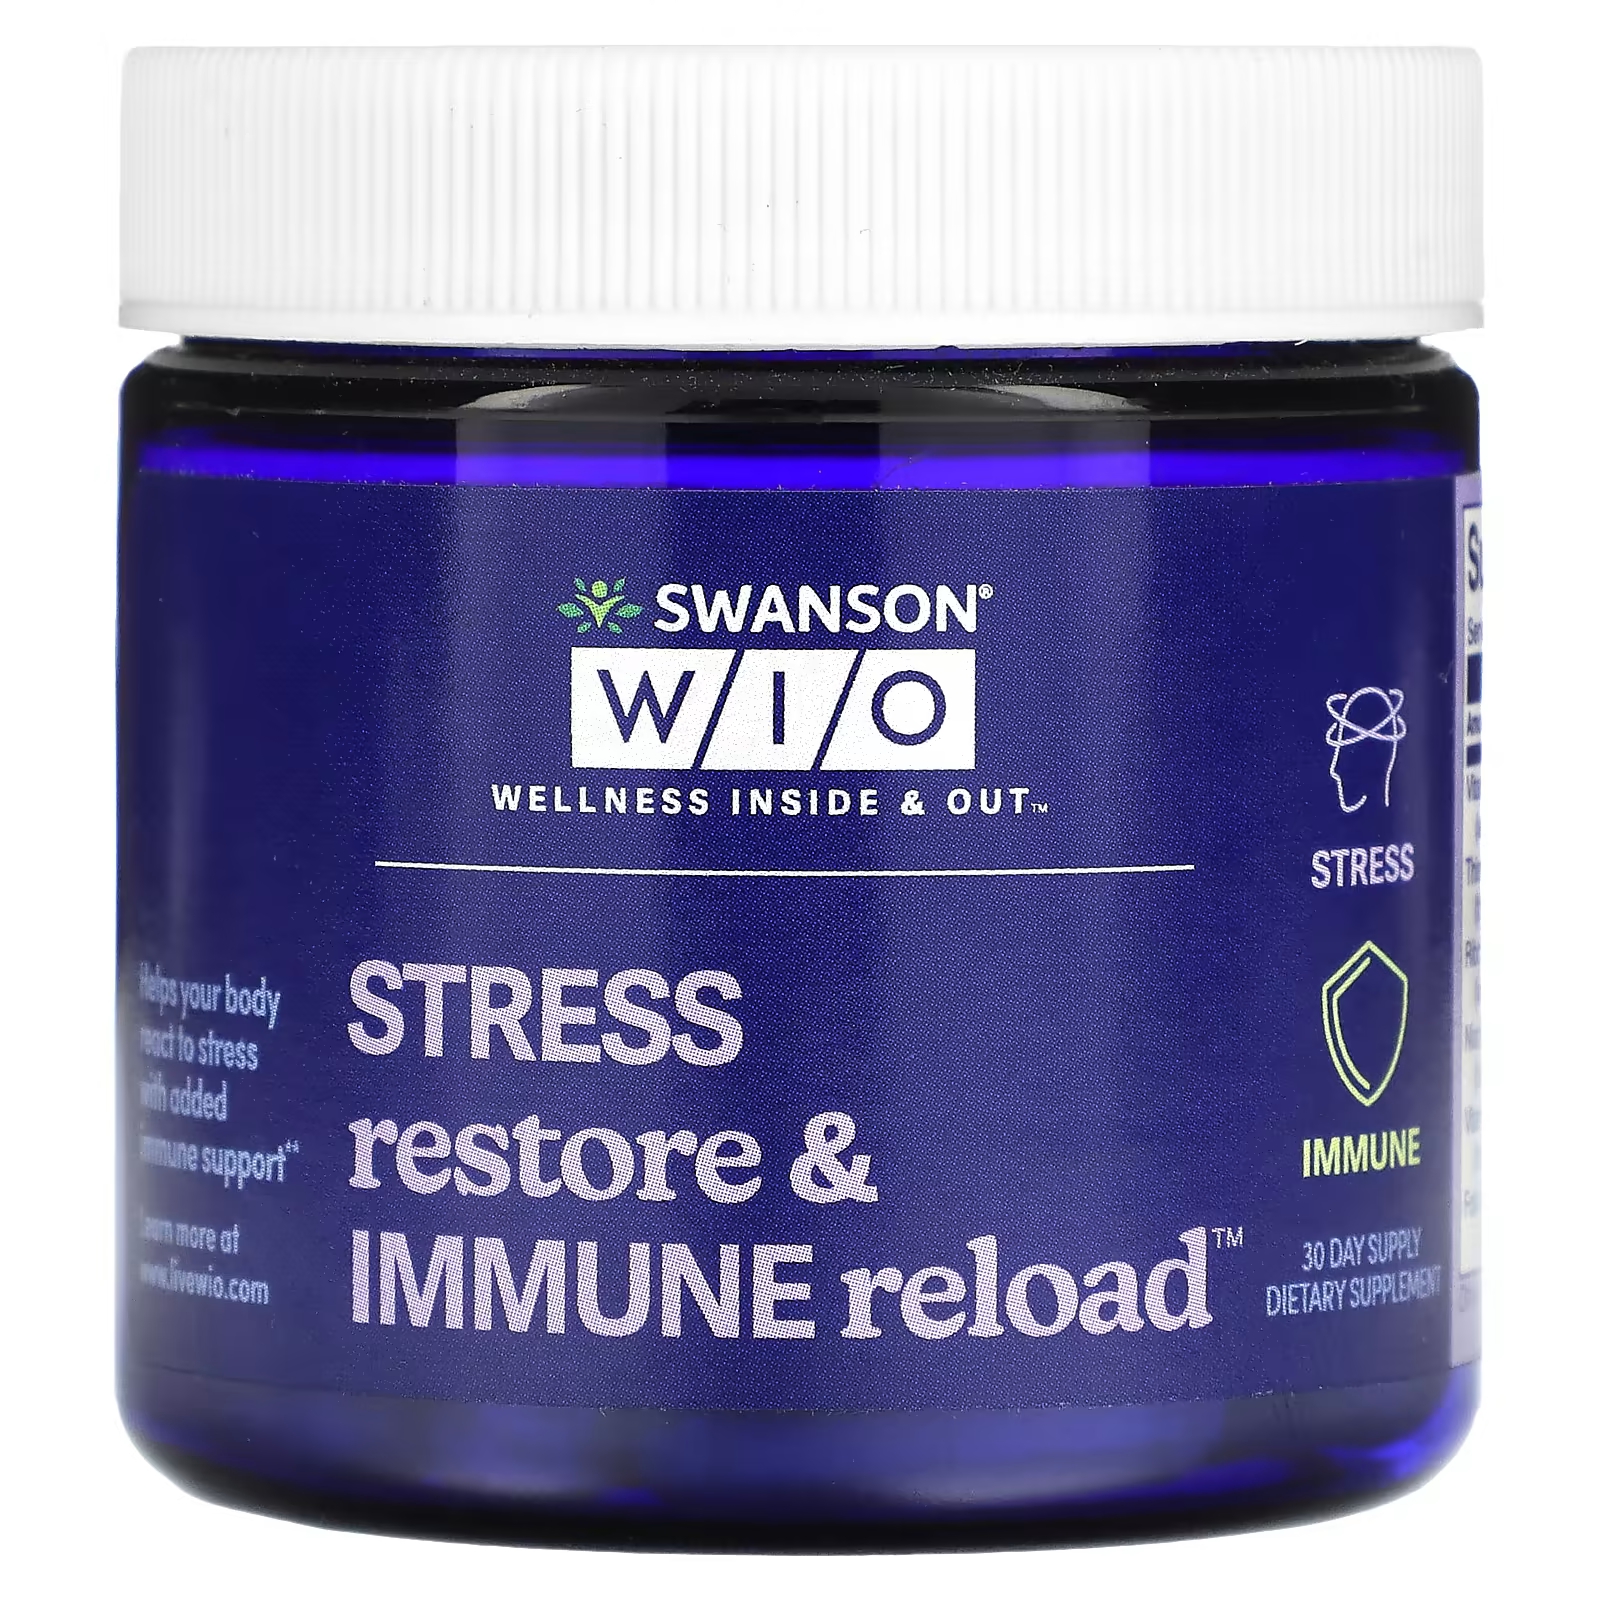 Swanson WIO Восстановление стресса и иммунная перезагрузка 30-дневный запас swanson wio идеальные условия работы 30 дневный запас